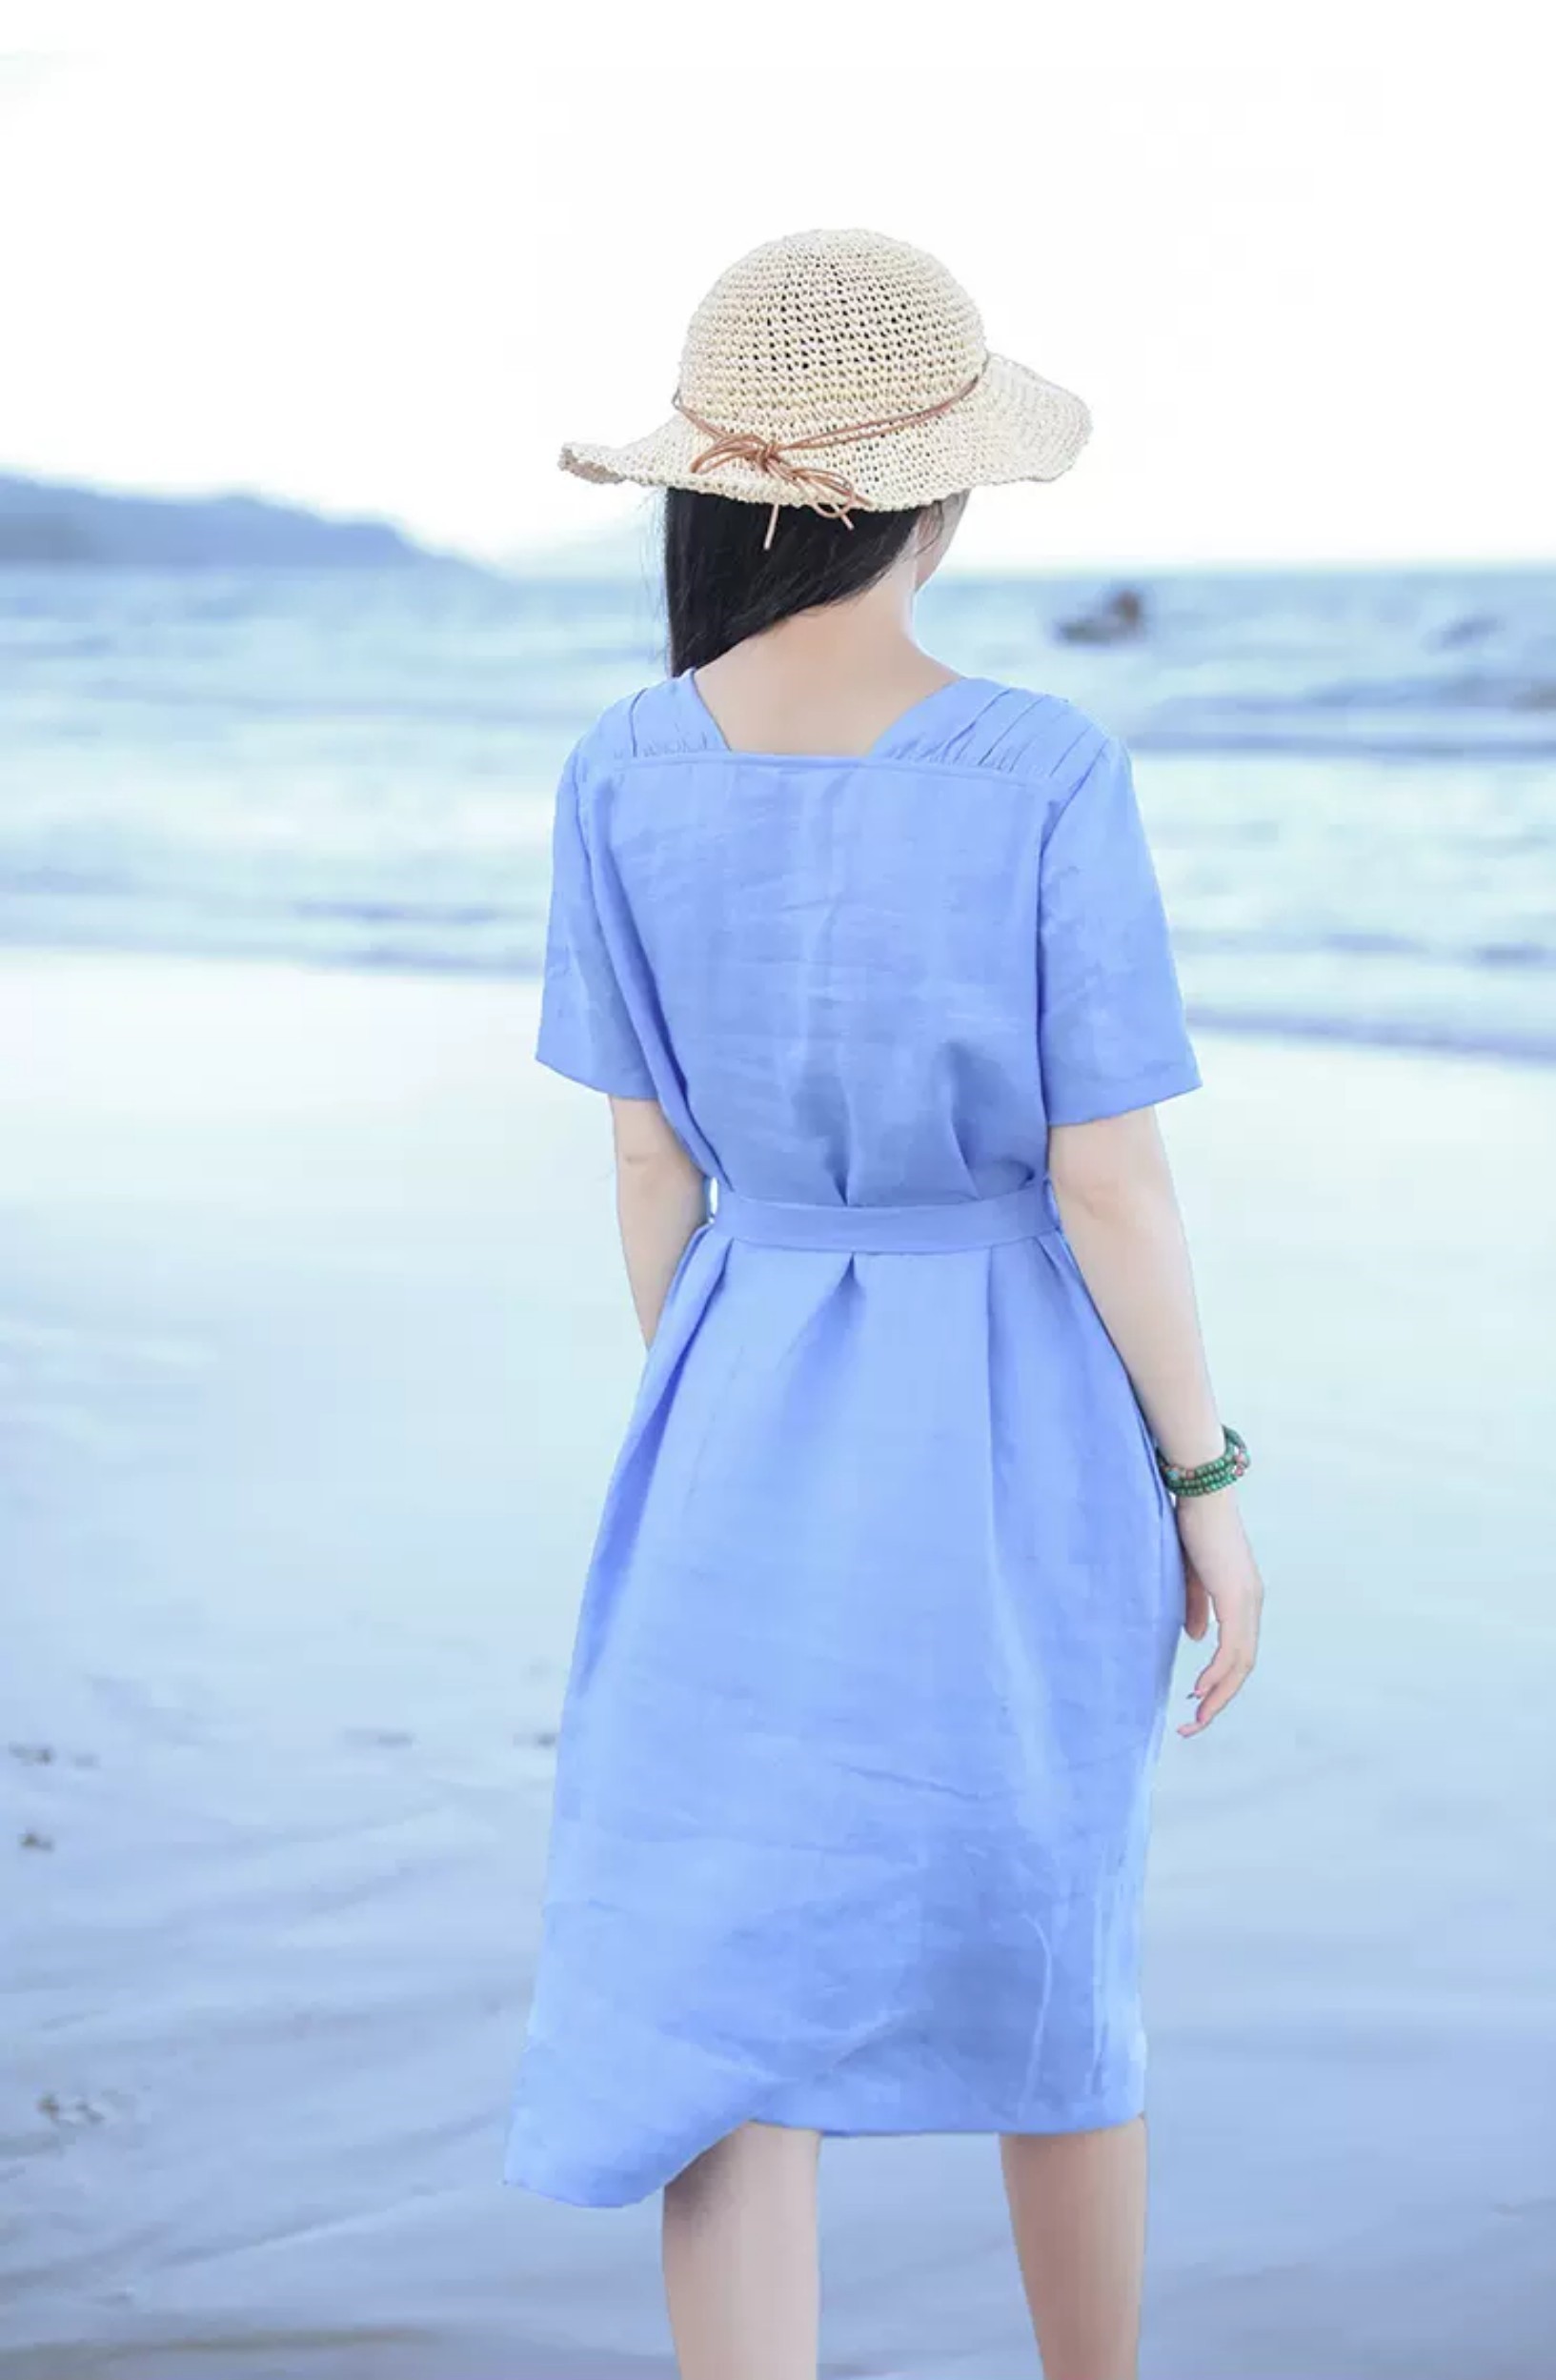 Đầm Linen suông form rộng cổ tròn ngắn tay kèm dây thắt eo, chất linen mềm mát mặc đi chơi, đi biển Đũi Việt DV209